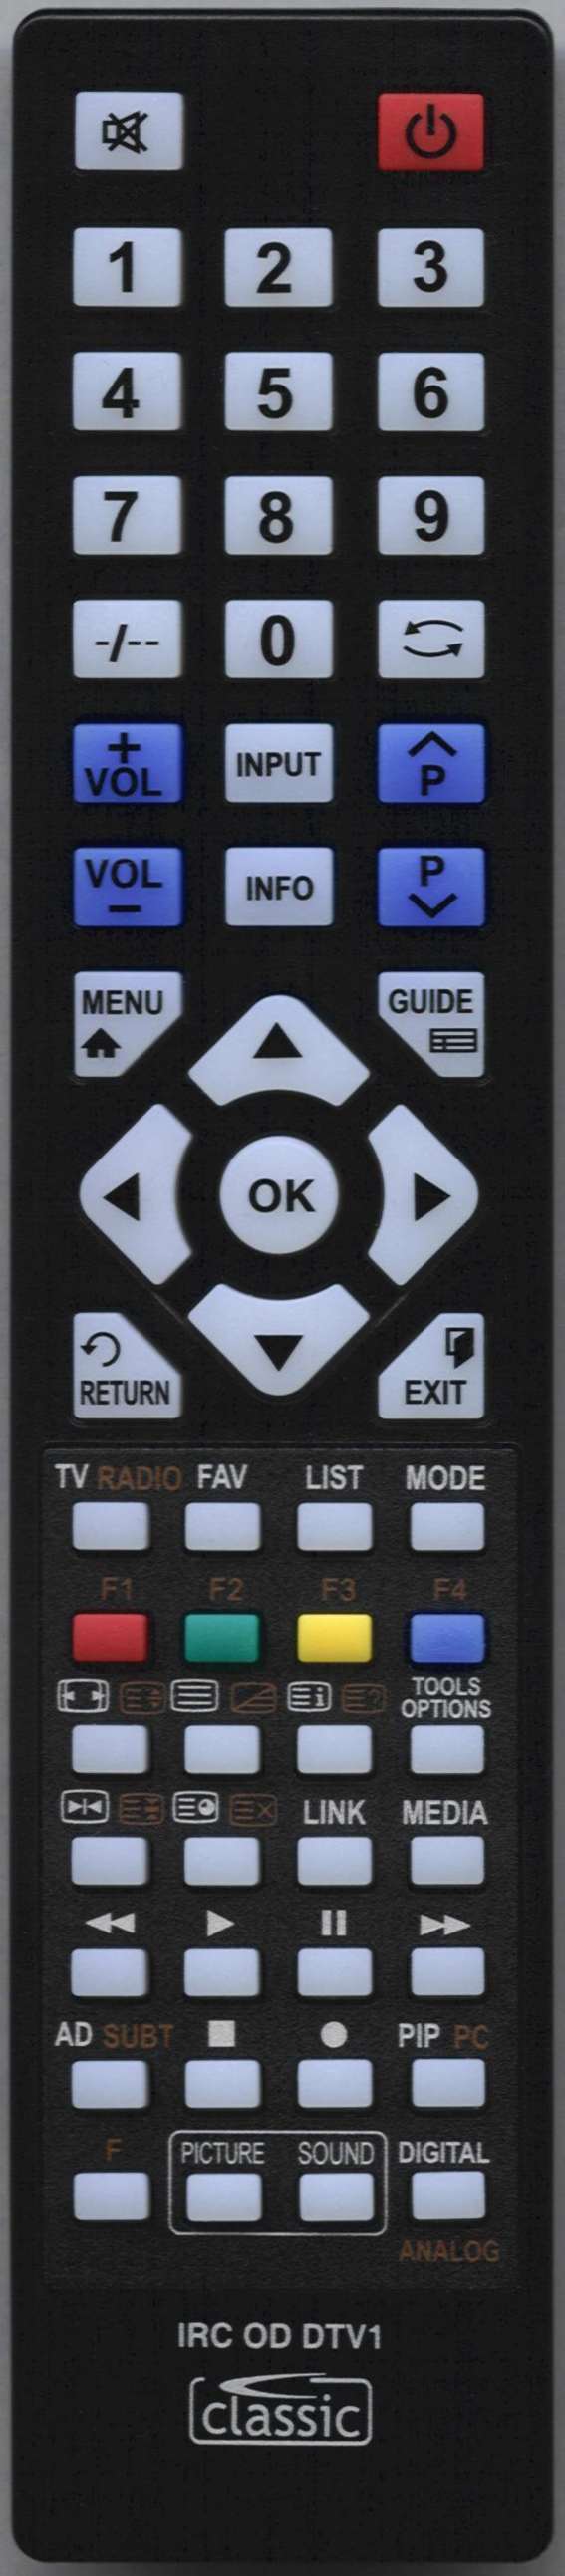 CELLO C16100F-LED Remote Control